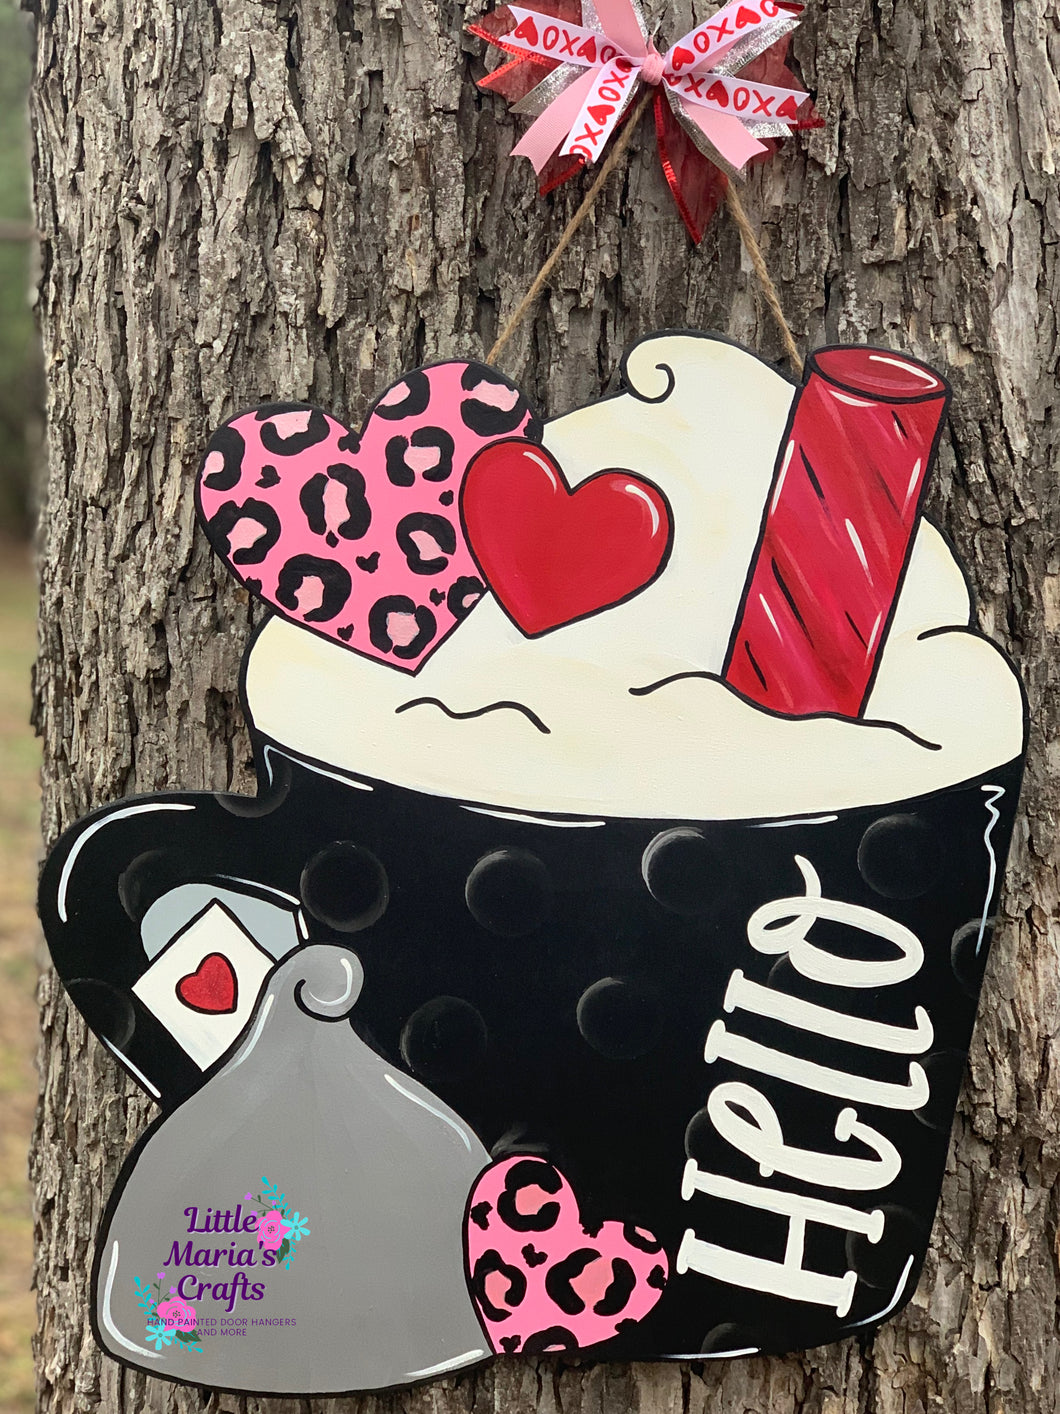 Valentine Cup of Sweets Latte door hanger